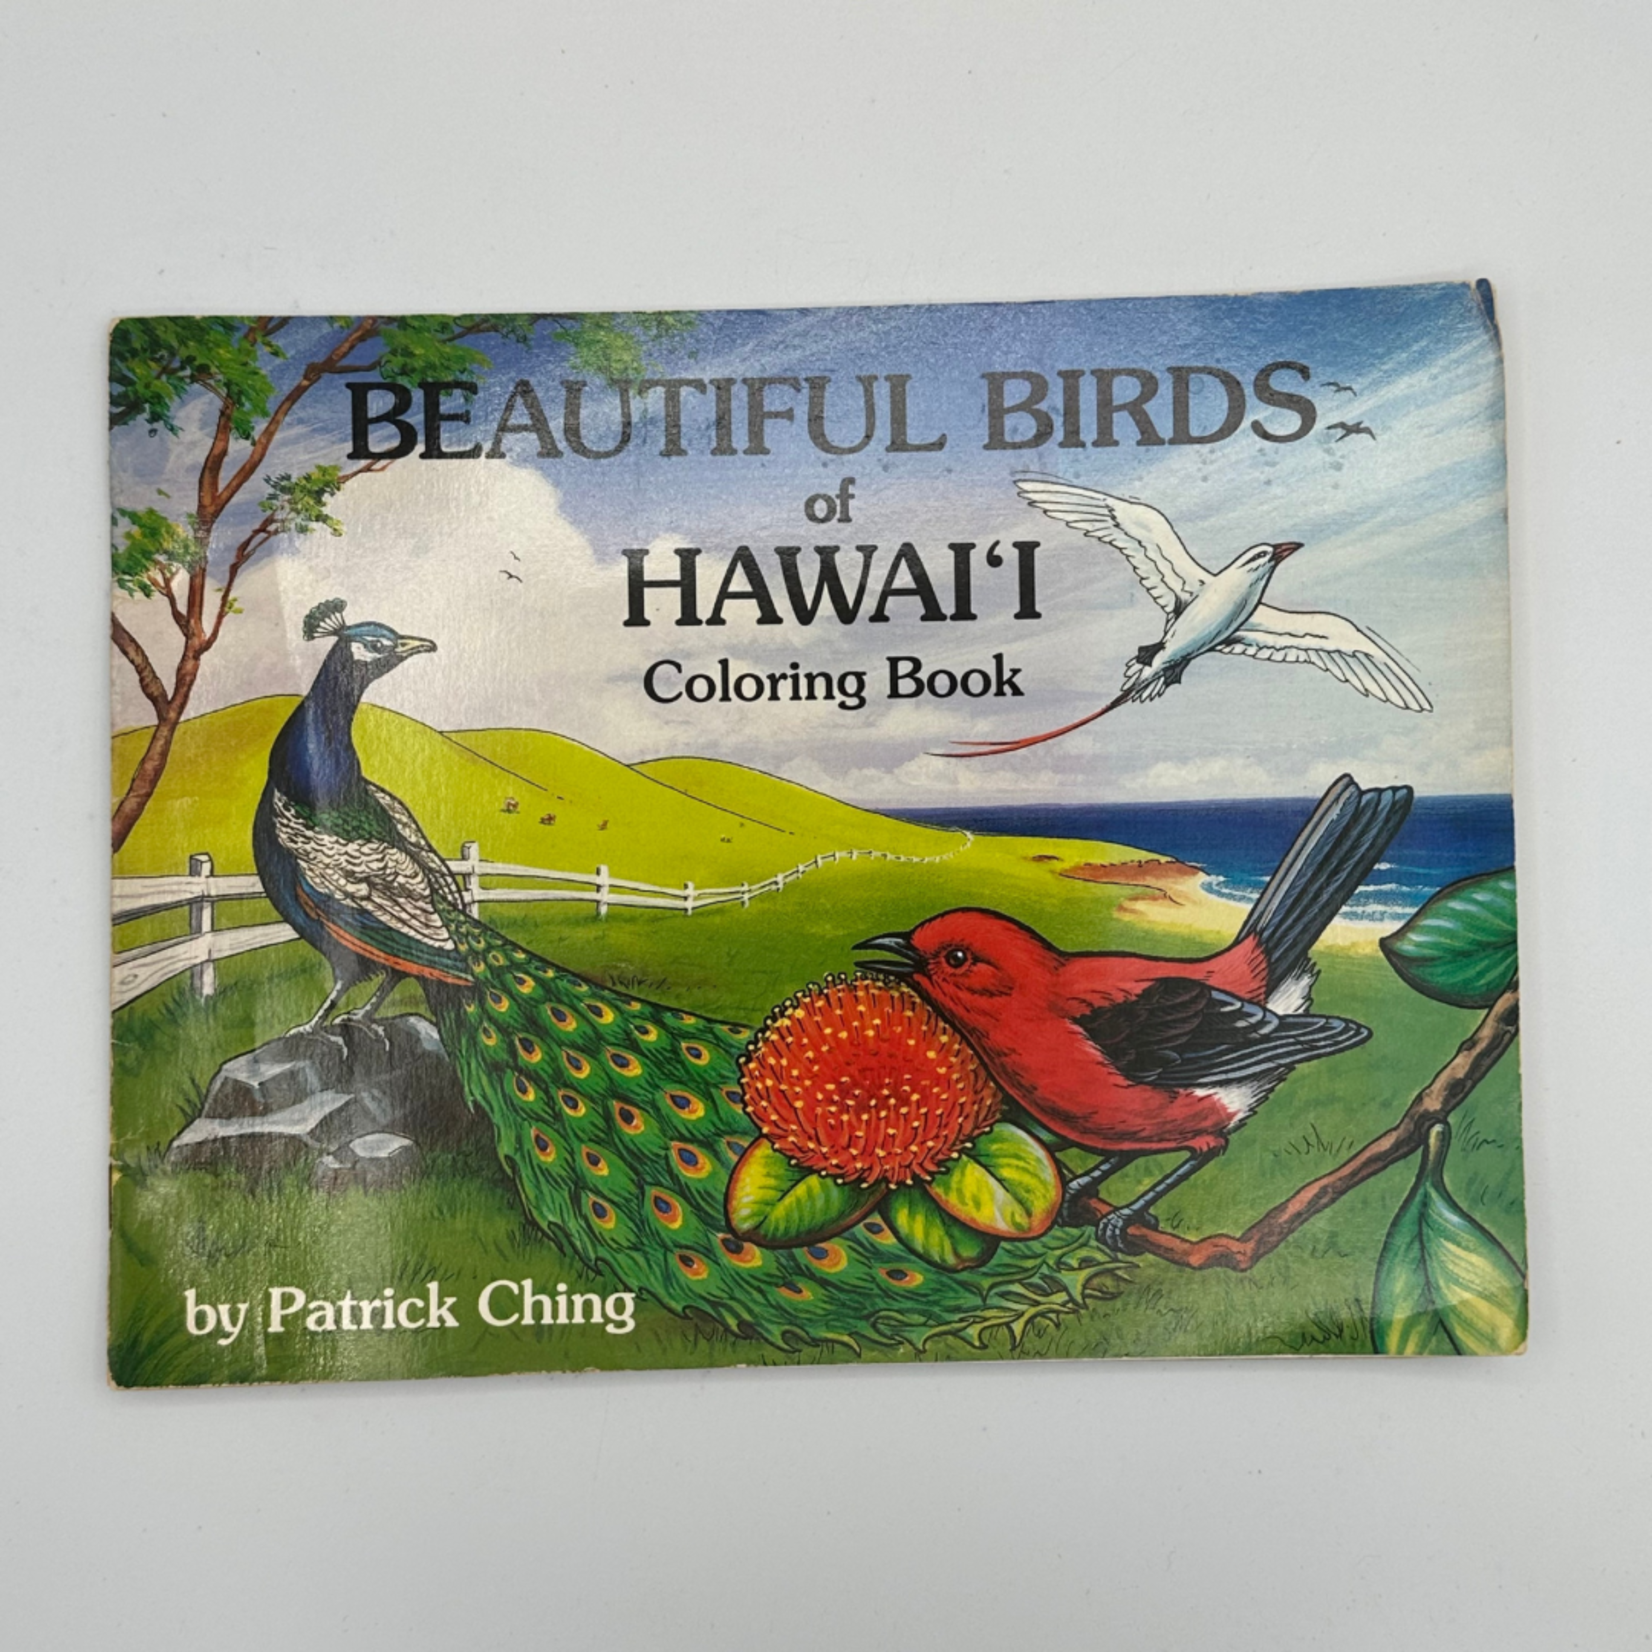 Mission Zero Vintage Birds of Hawai'i Coloring Book